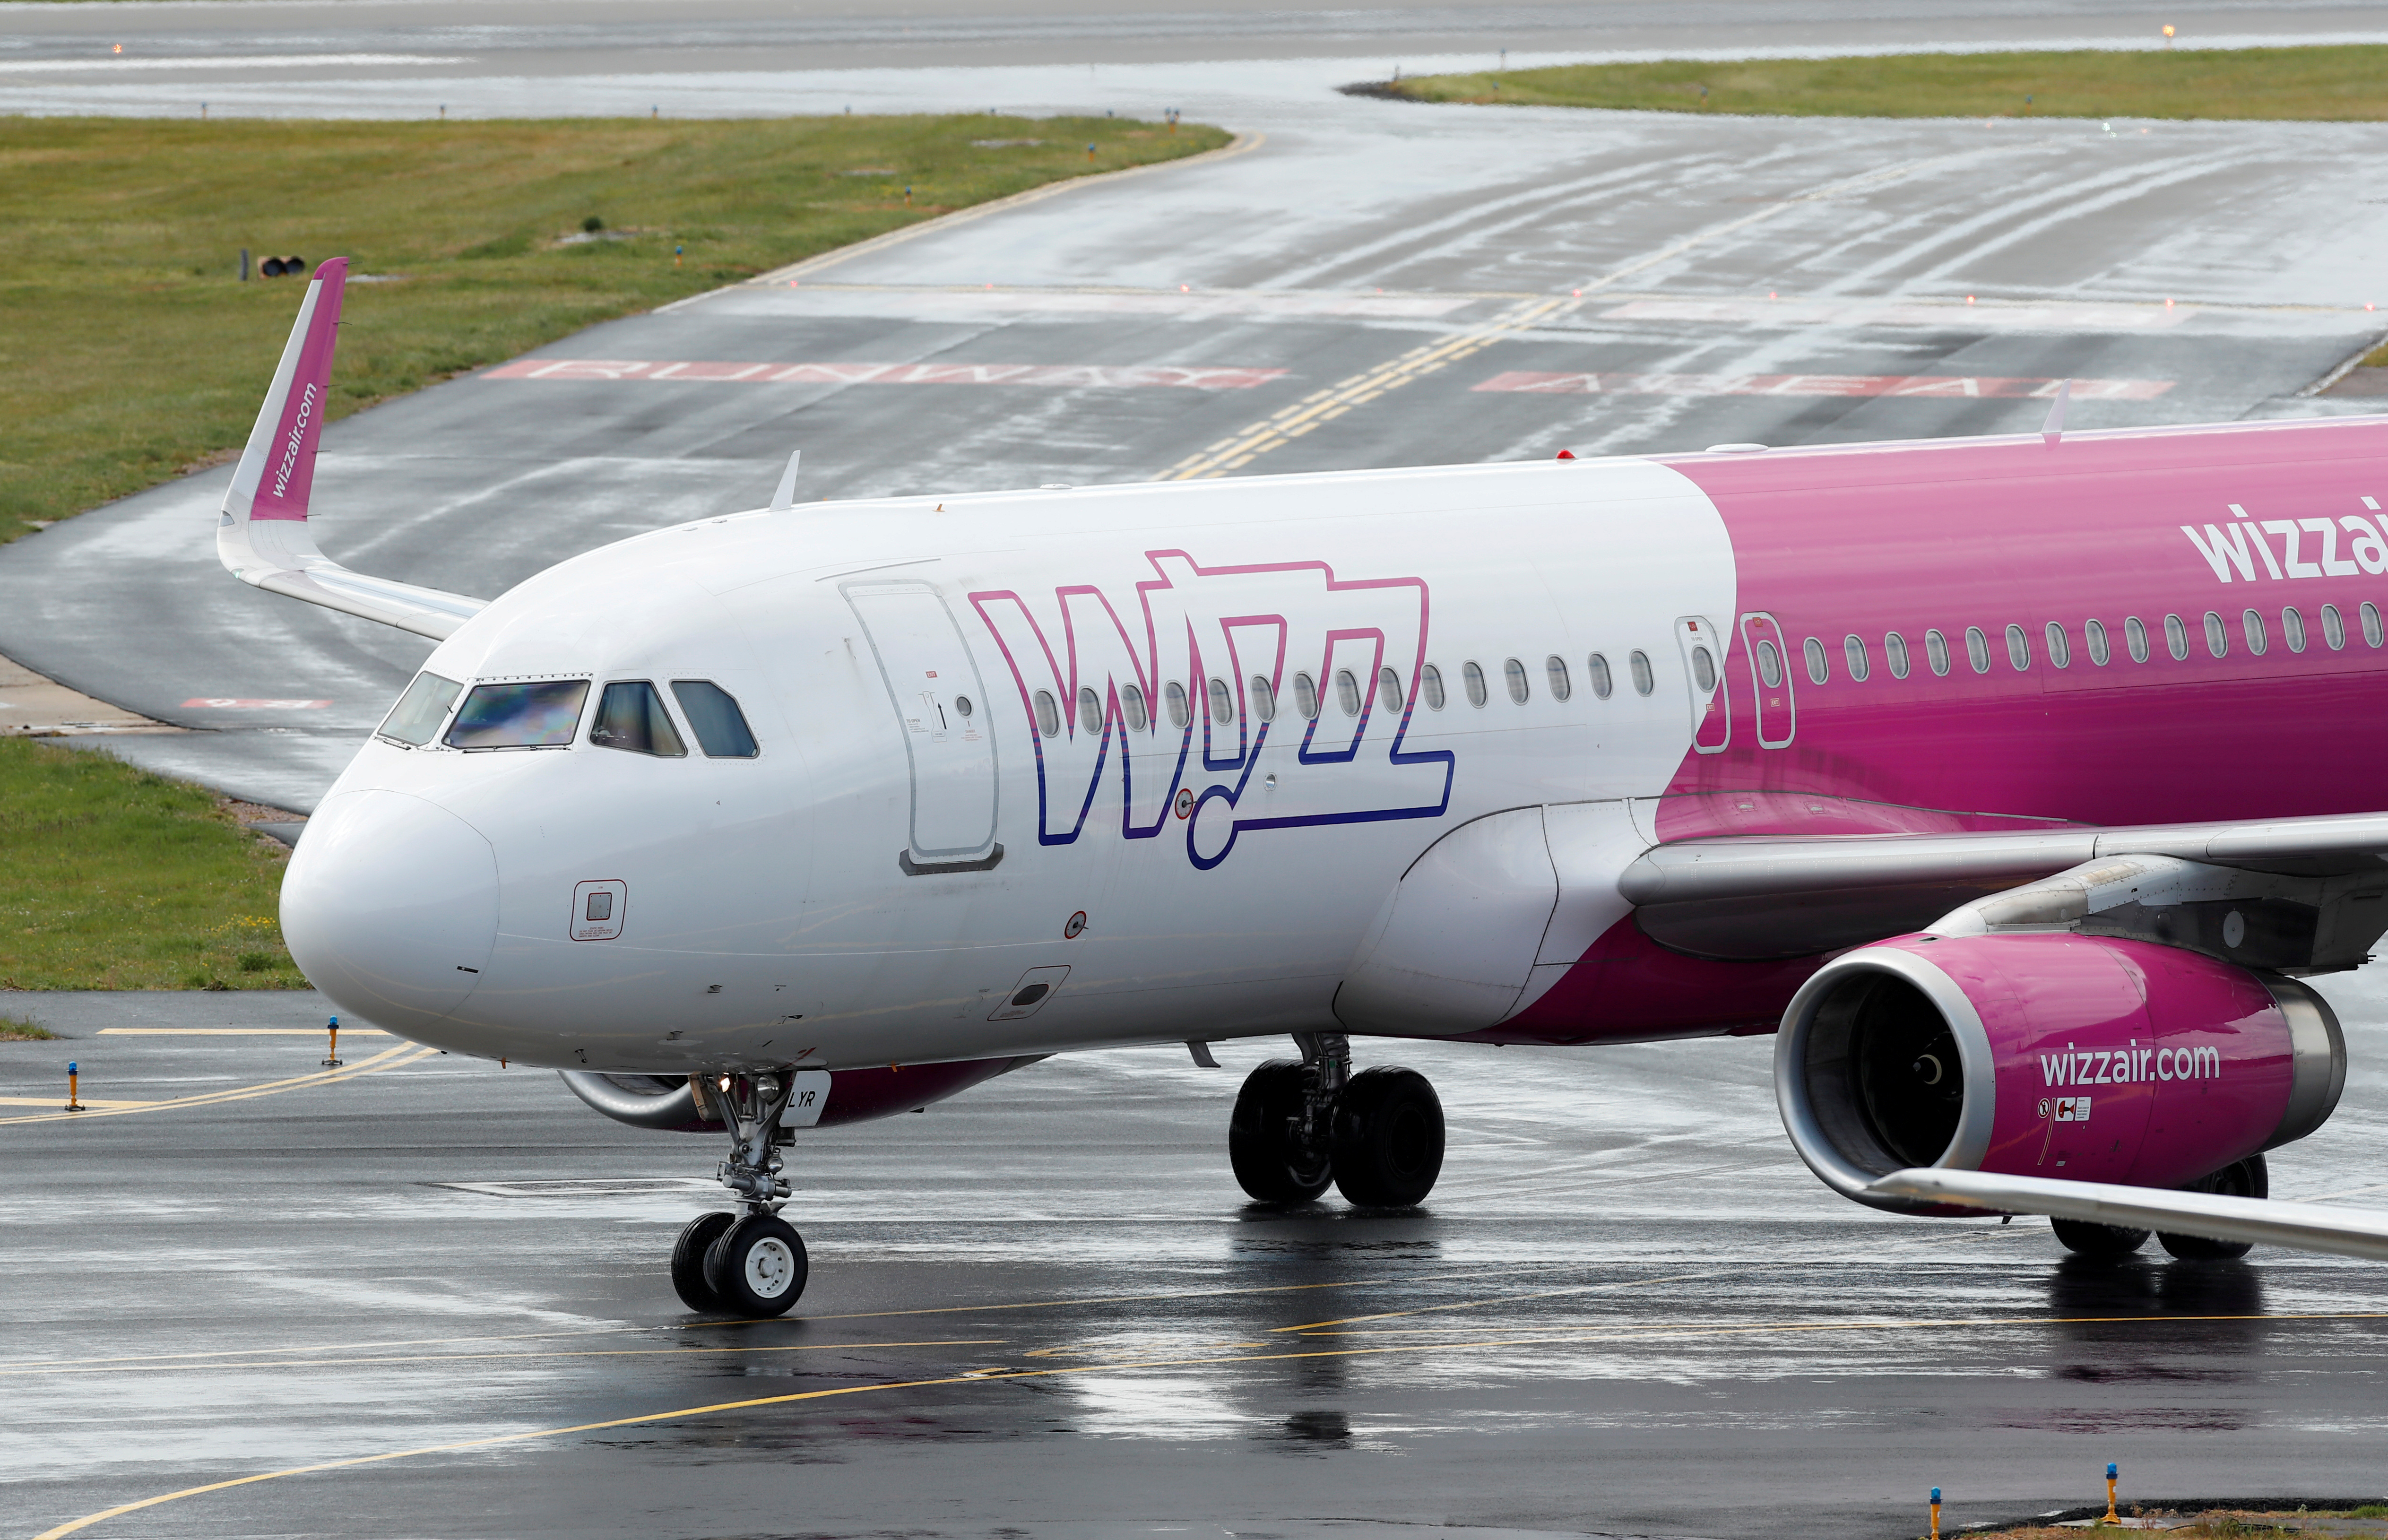 Wizzair confirme sa success story en commandant 75 Airbus A321 Neo supplémentaires